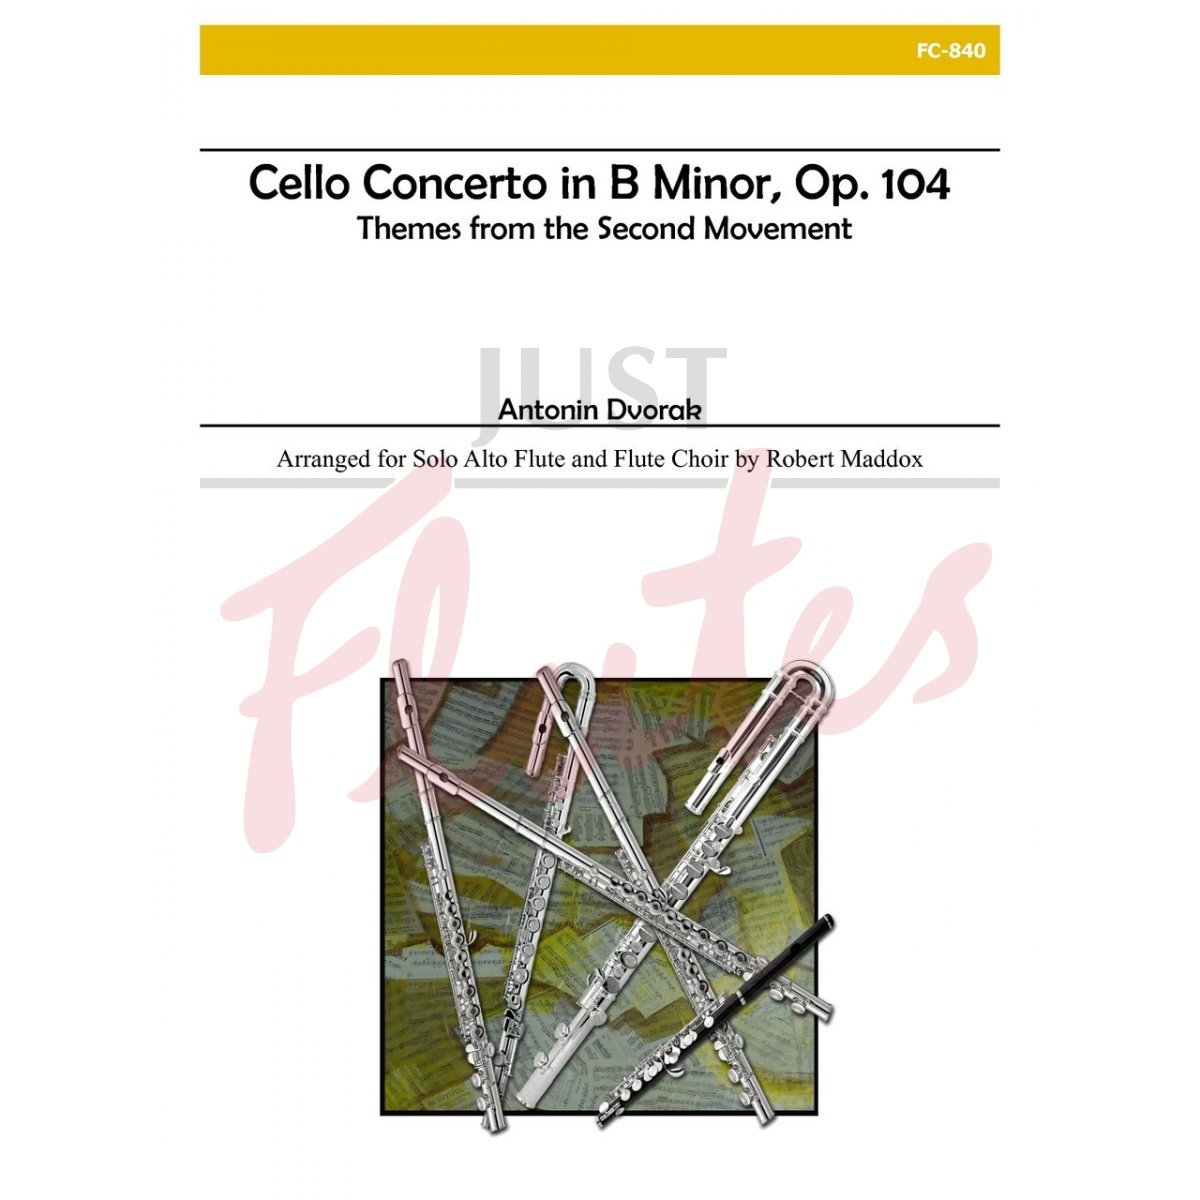 Cello Concerto in B minor